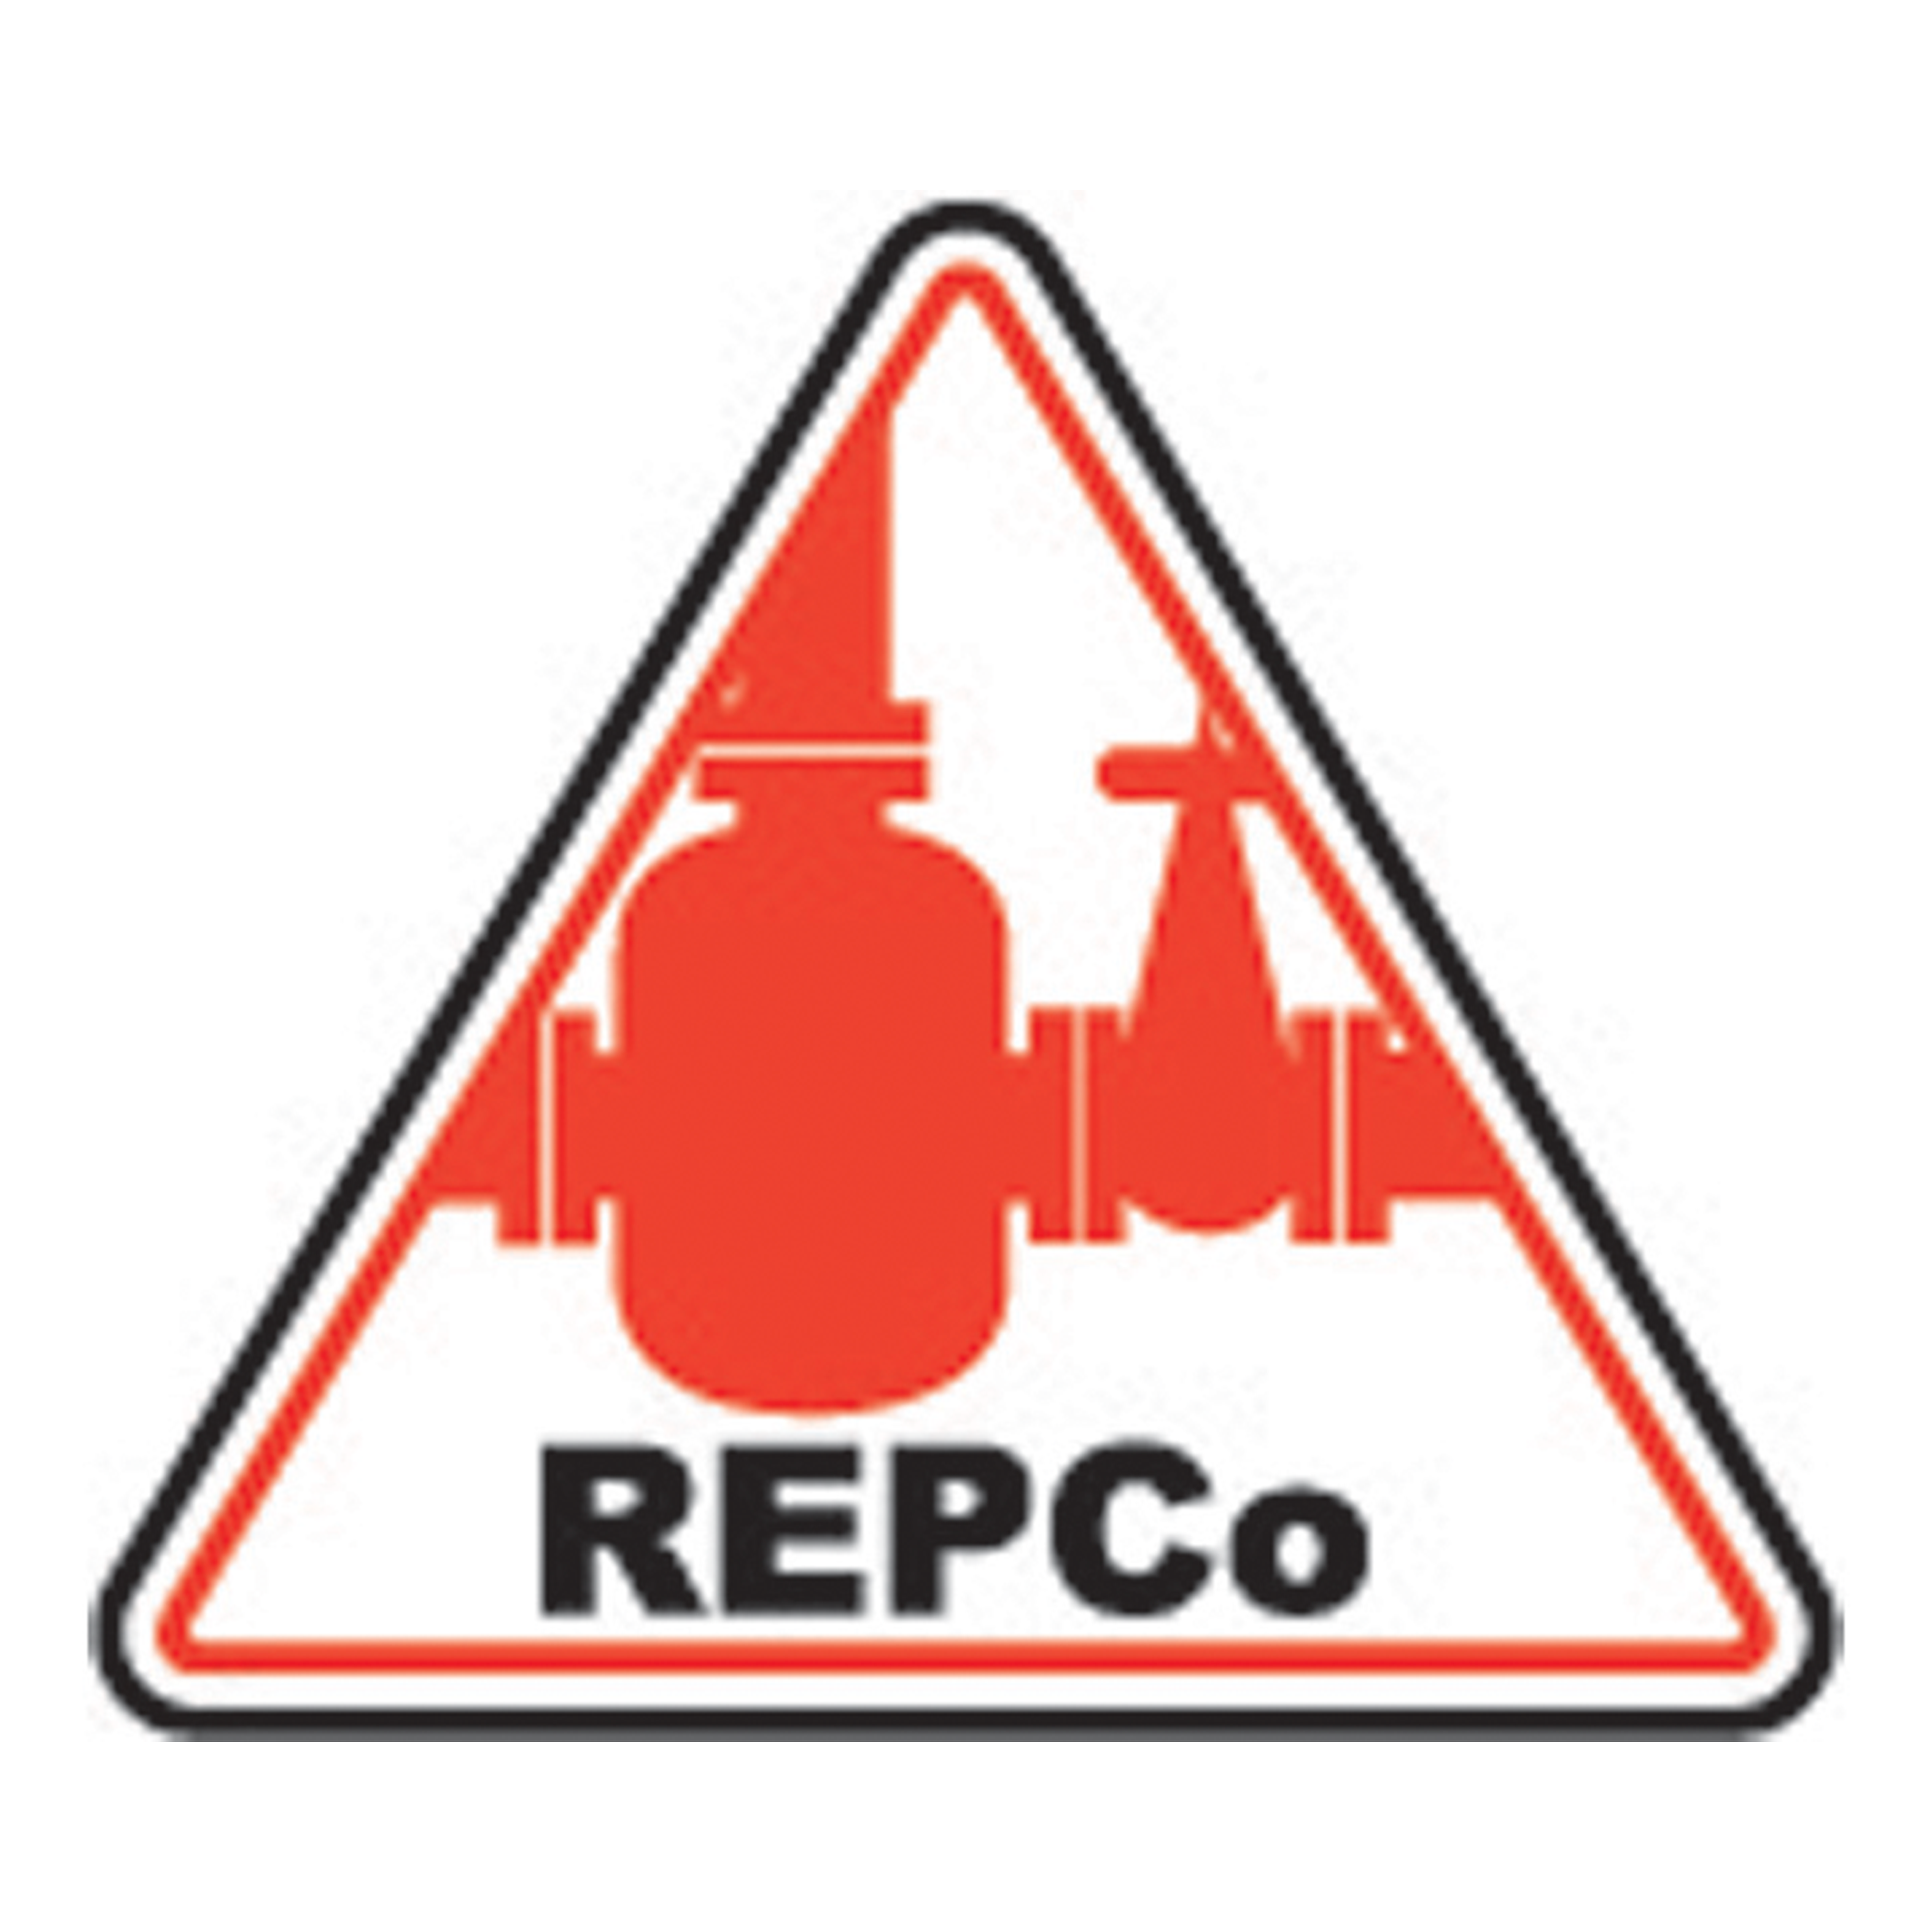 REPCo - Consorzio C2T